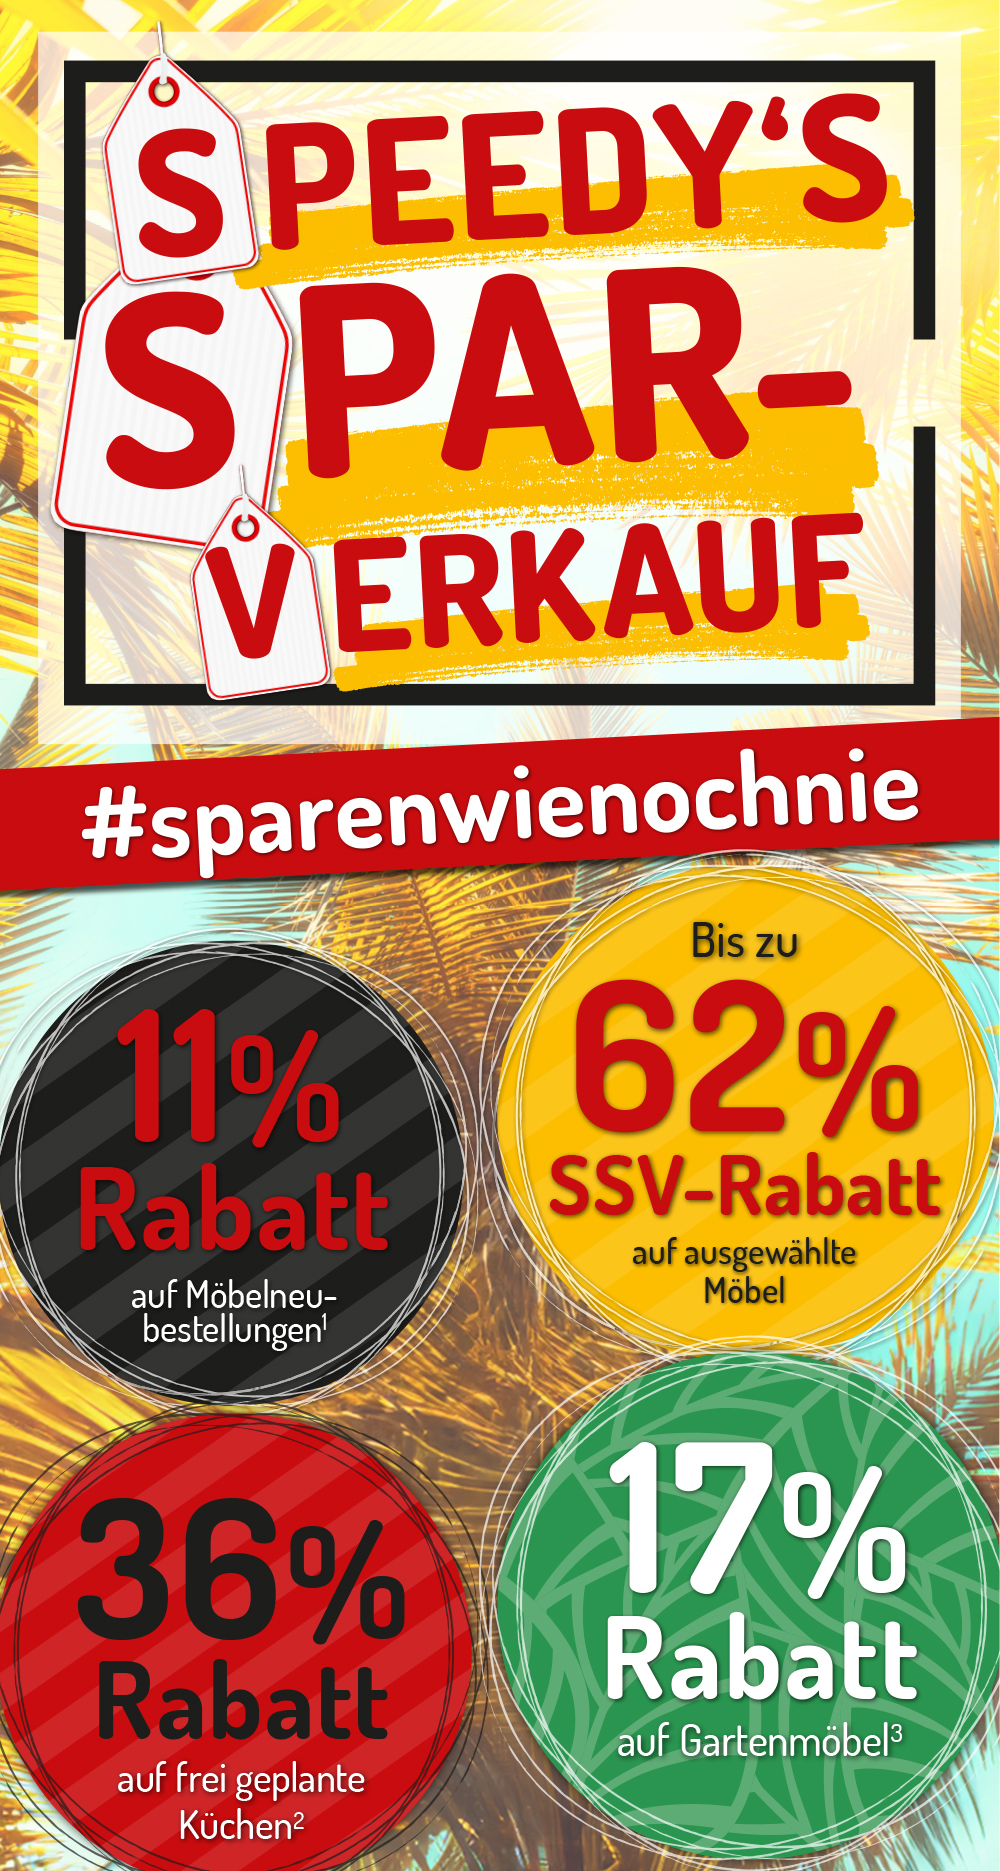 speedys Sparverkauf in Kirchheim: bis zu 62% SSV-Rabatt auf ausgewählte Möbel